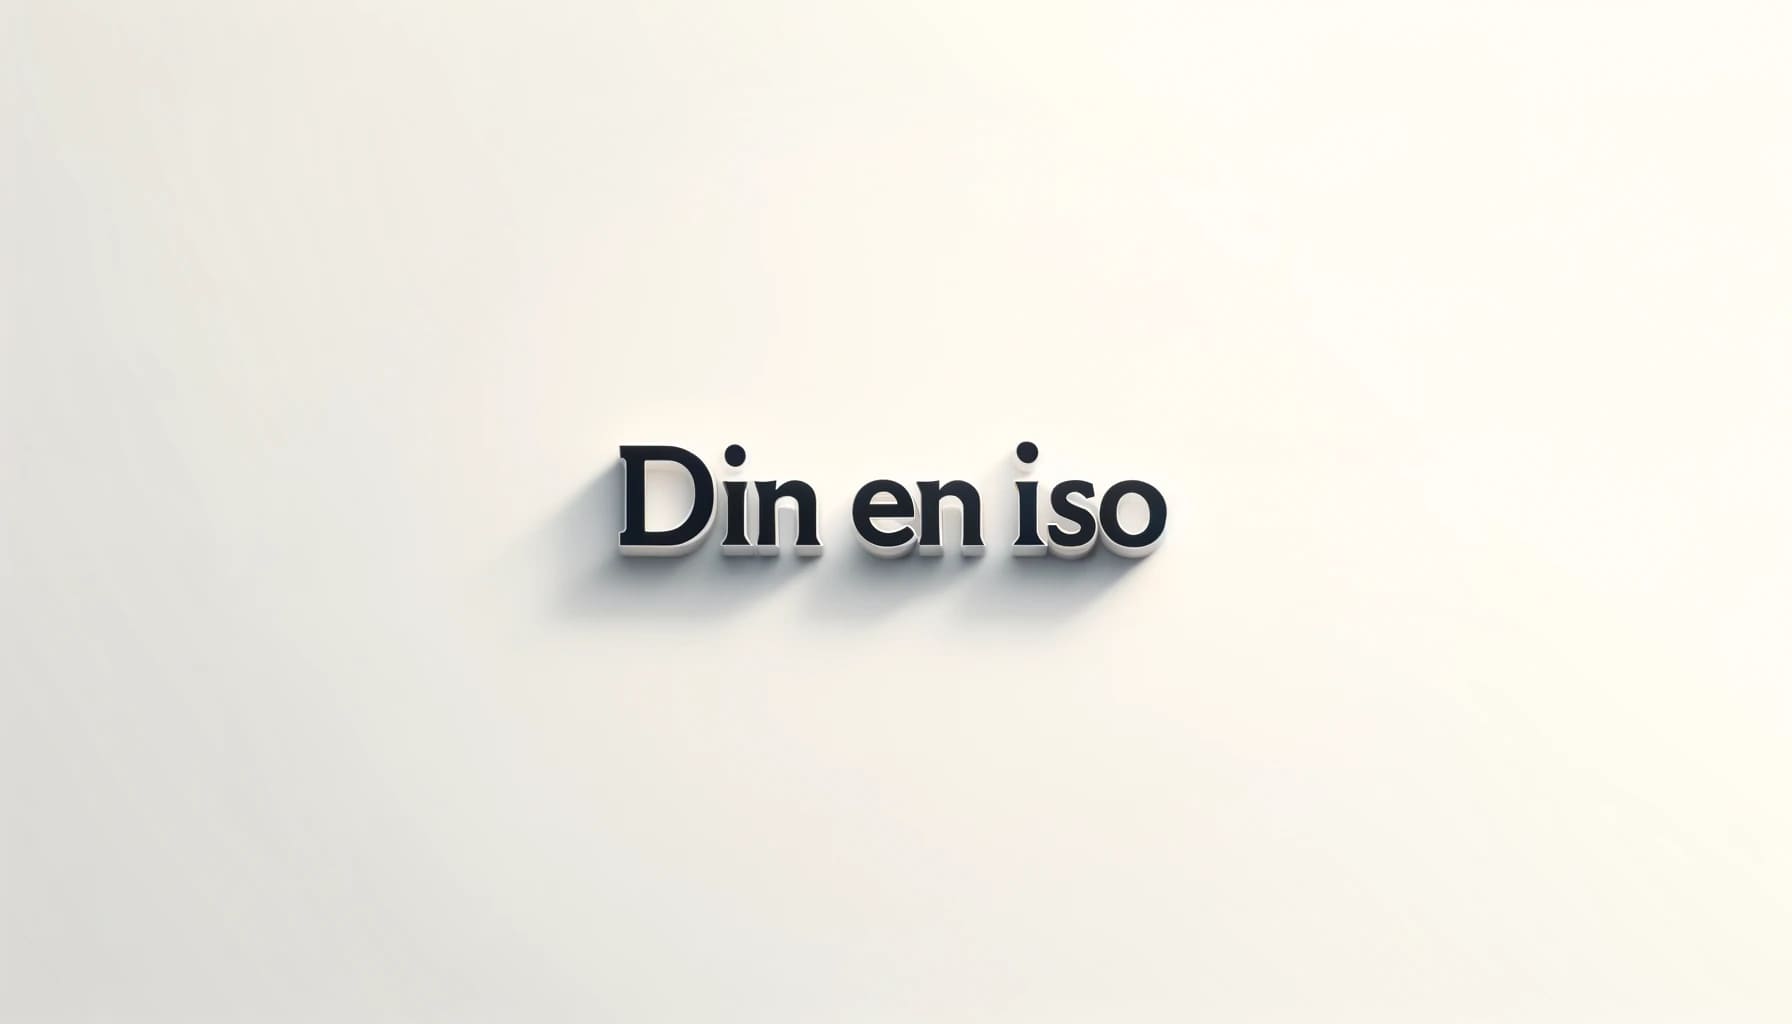 DIN-EN-ISO